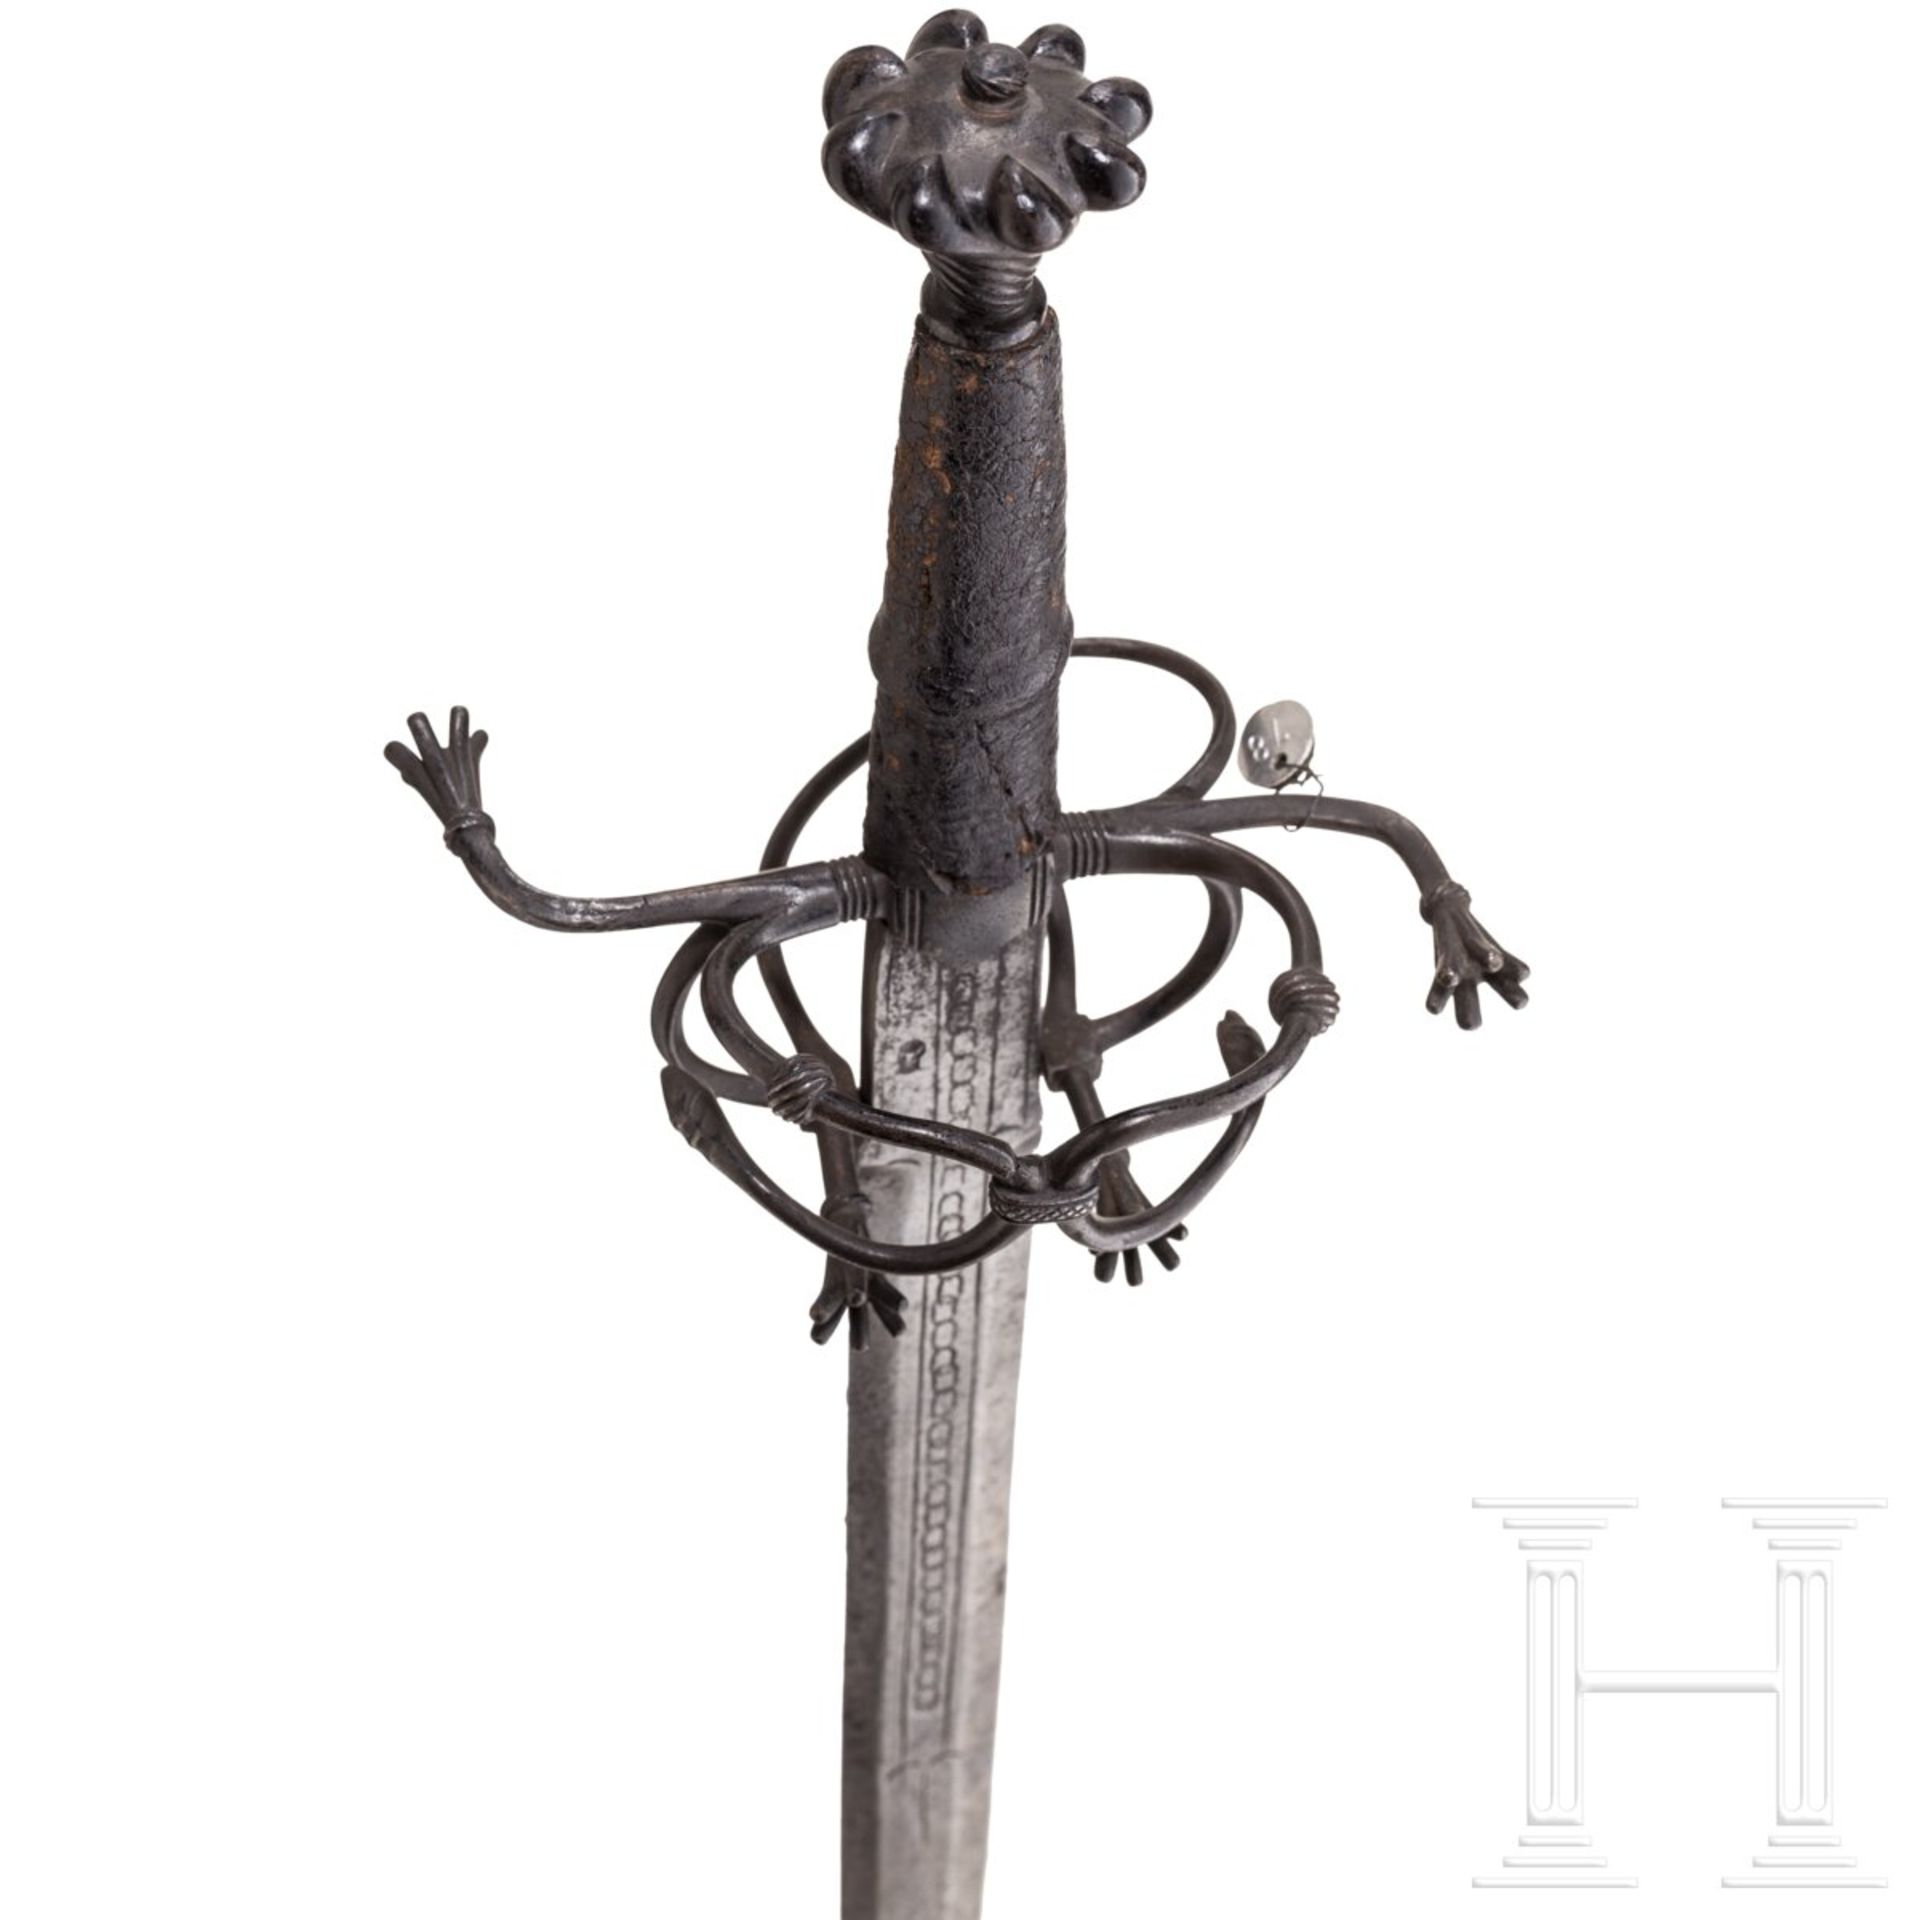 Ritterliches Schwert zu anderthalb Hand, süddeutsch, um 1530 - Bild 3 aus 9